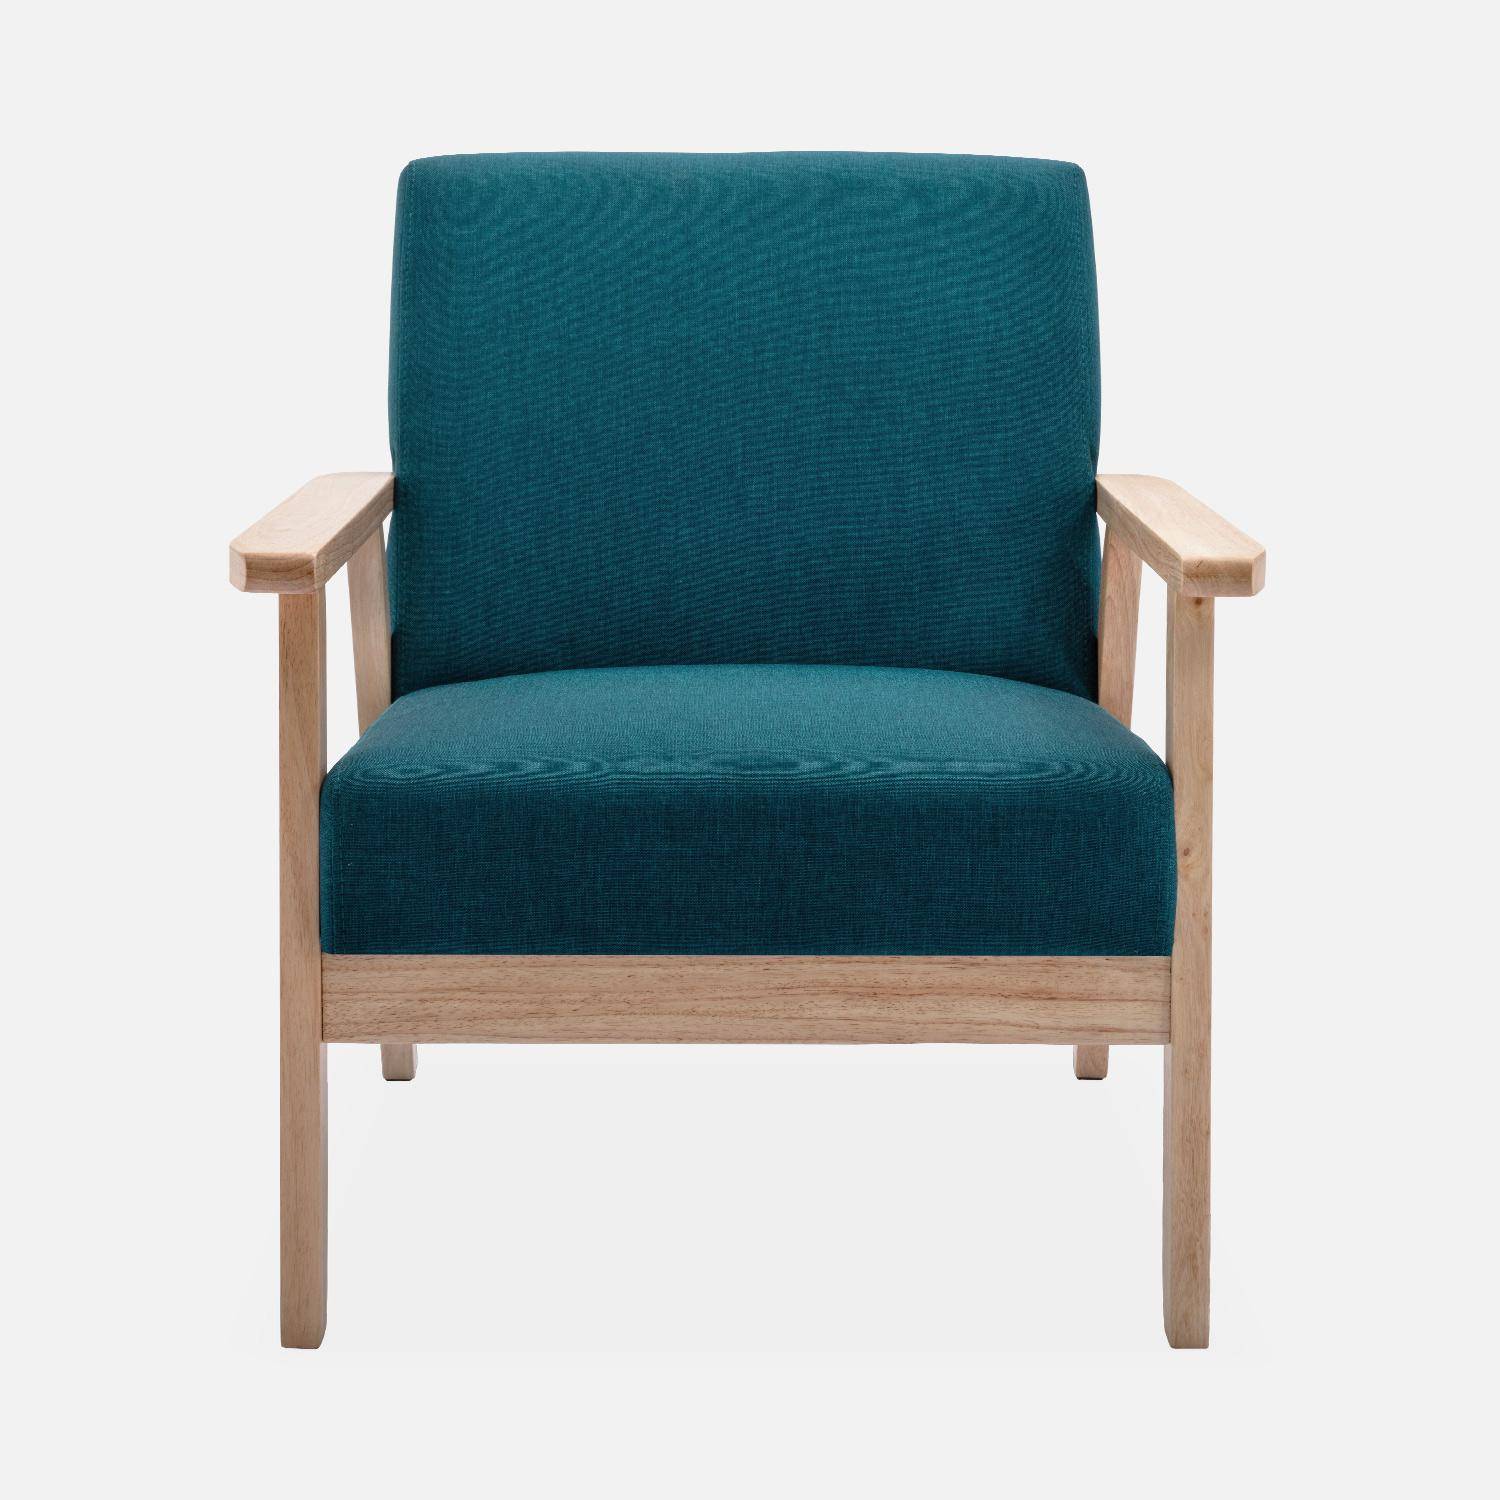 Banquette et fauteuil scandinave en bois et tissu bleu pétrole L 114 x l 69,5 x H 73cm Photo4